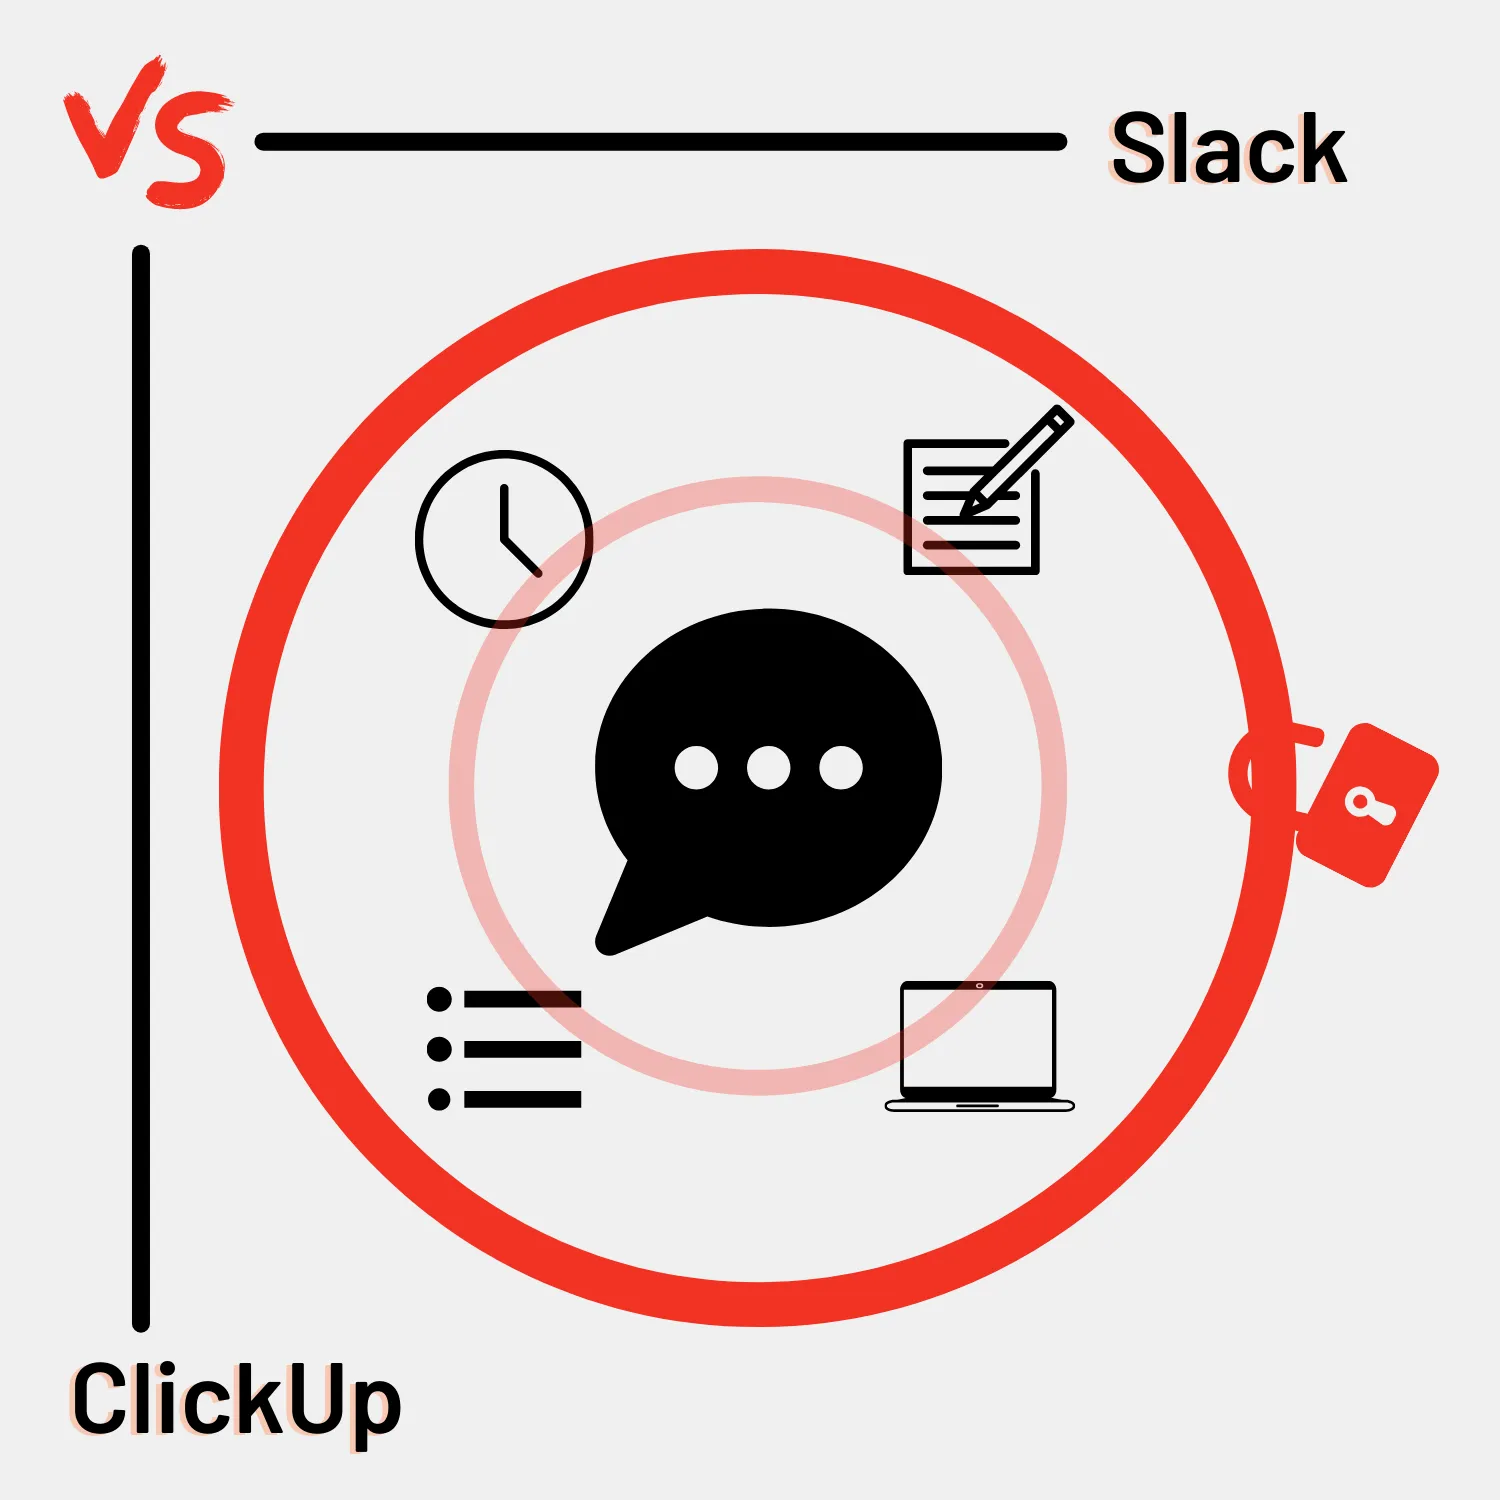 Slack vs. ClickUp